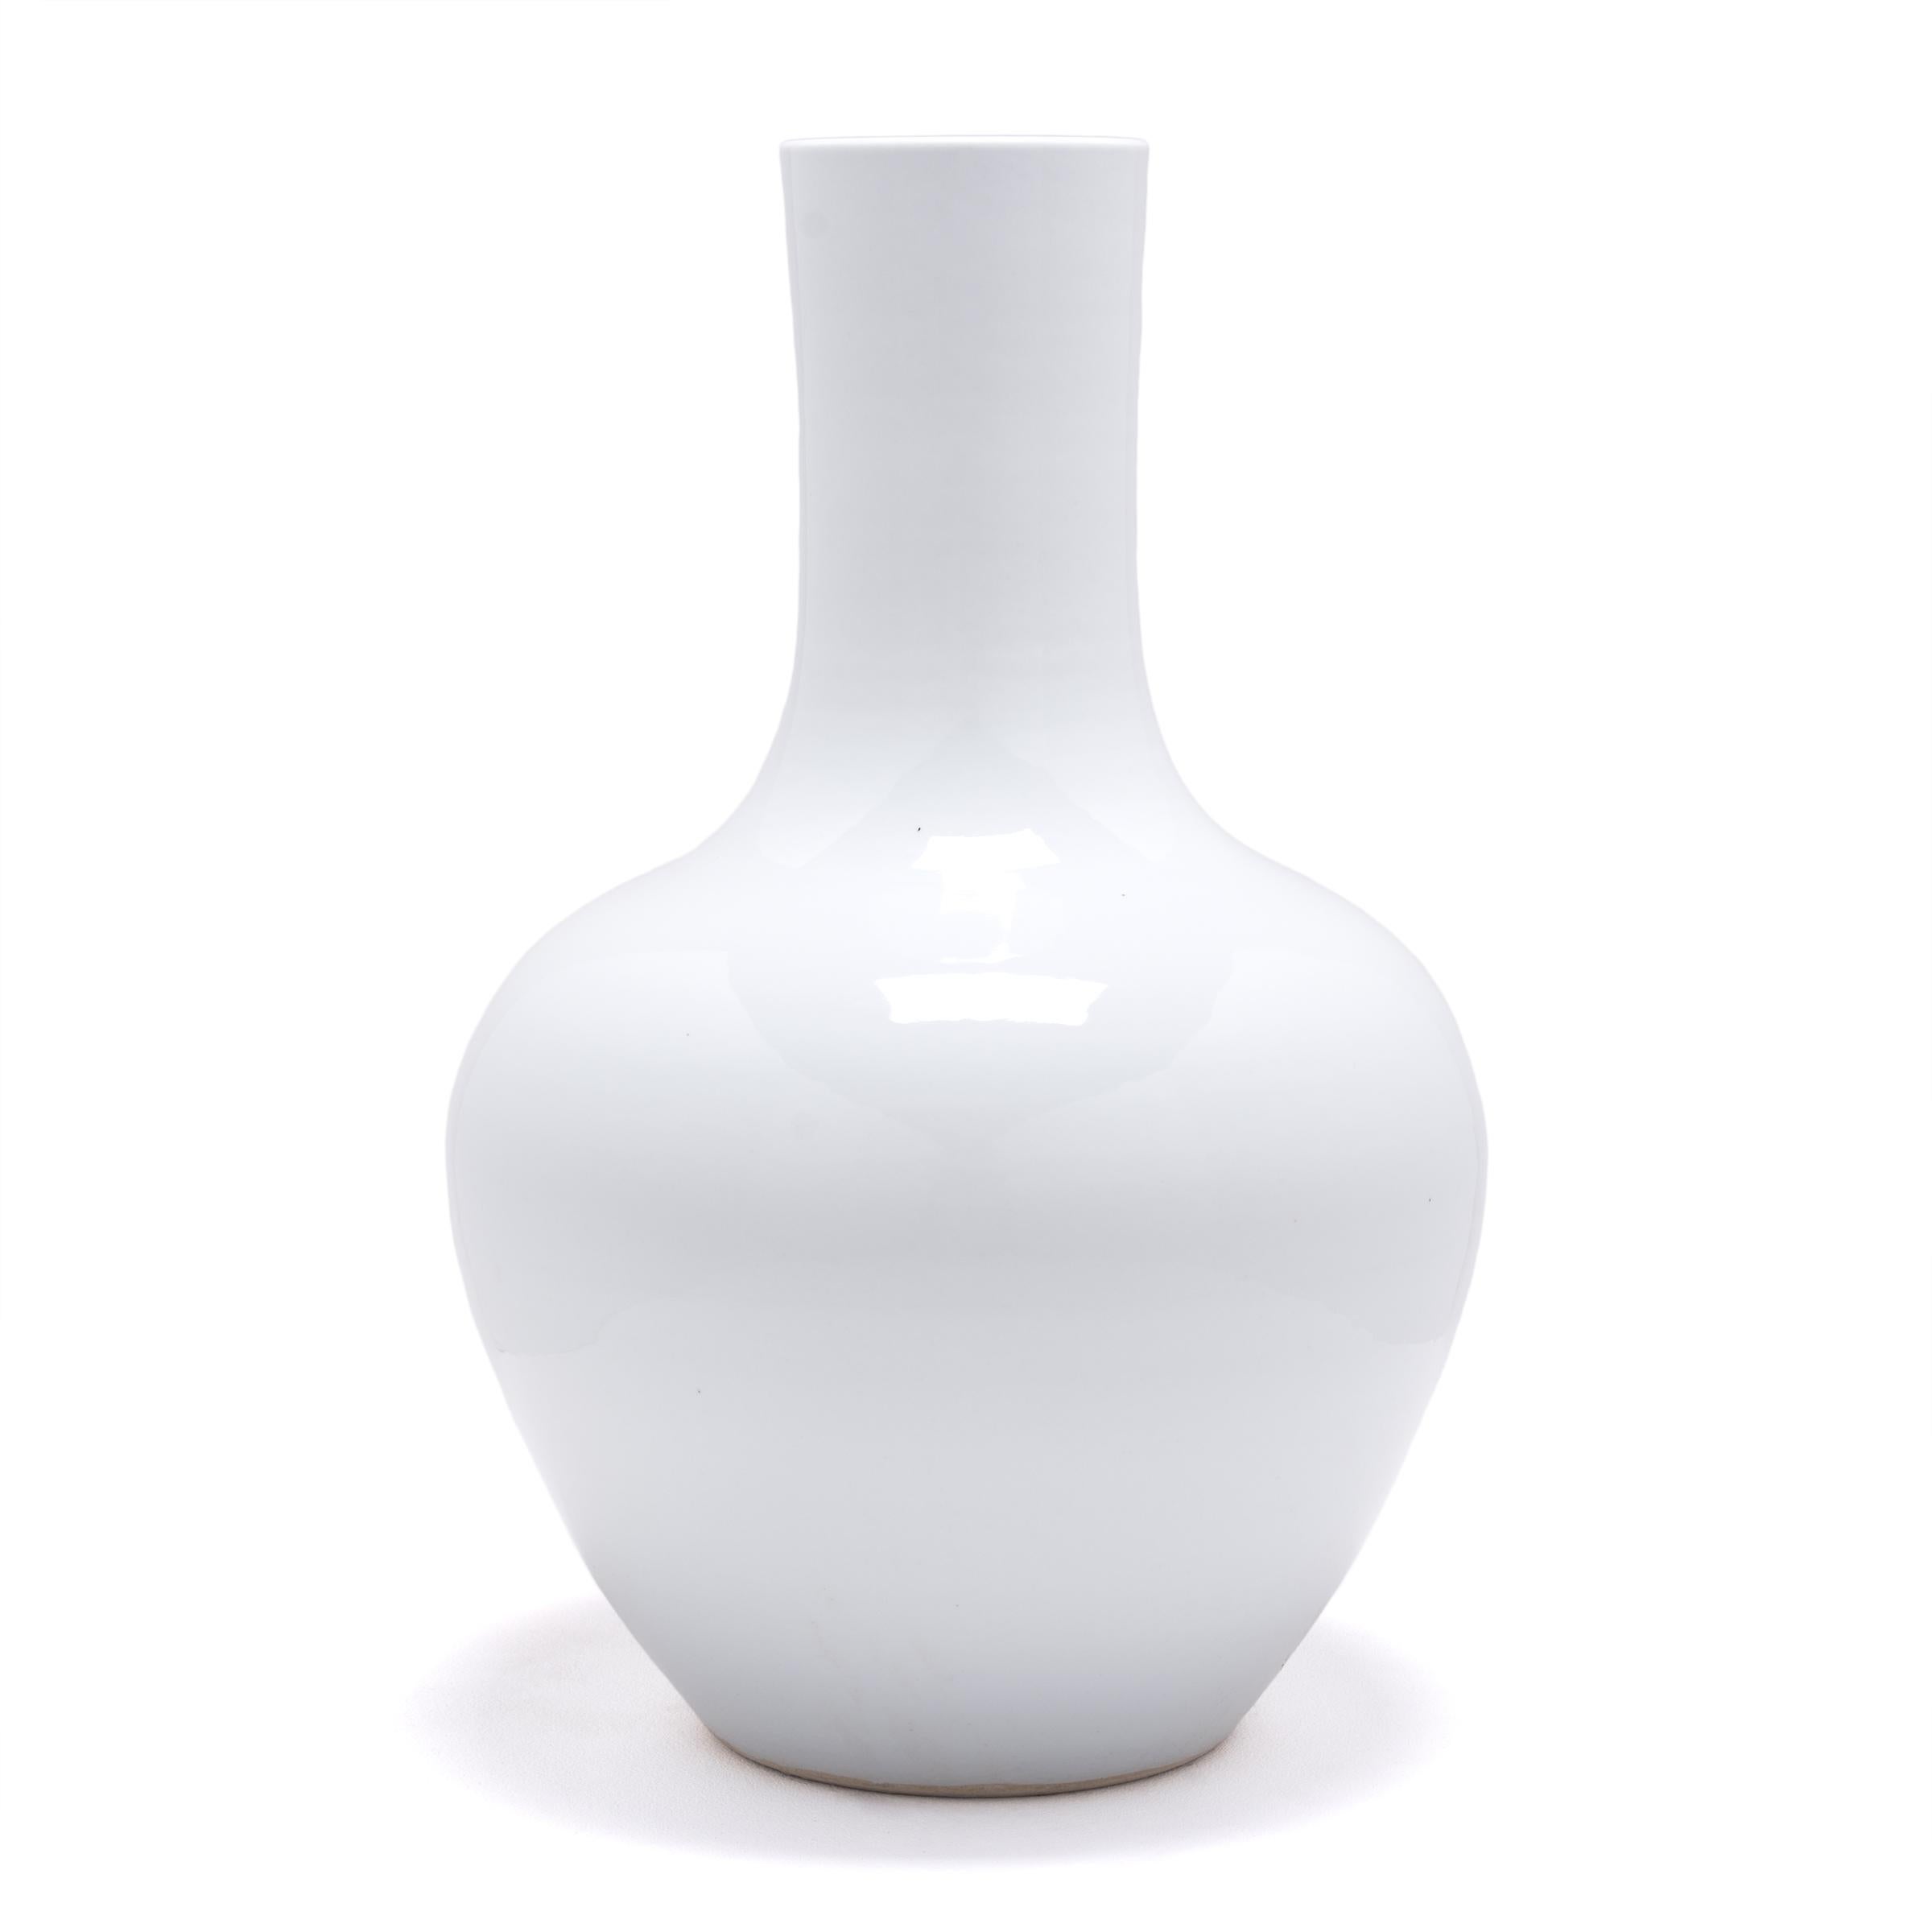 In Anlehnung an die lange chinesische Tradition der monochromen Keramik ist diese hohe Schwanenhalsvase durchgängig mit einer kühlen weißen Glasur versehen. Die Vase hat einen runden Körper mit hohen Schultern und einem schmalen zylindrischen Hals,